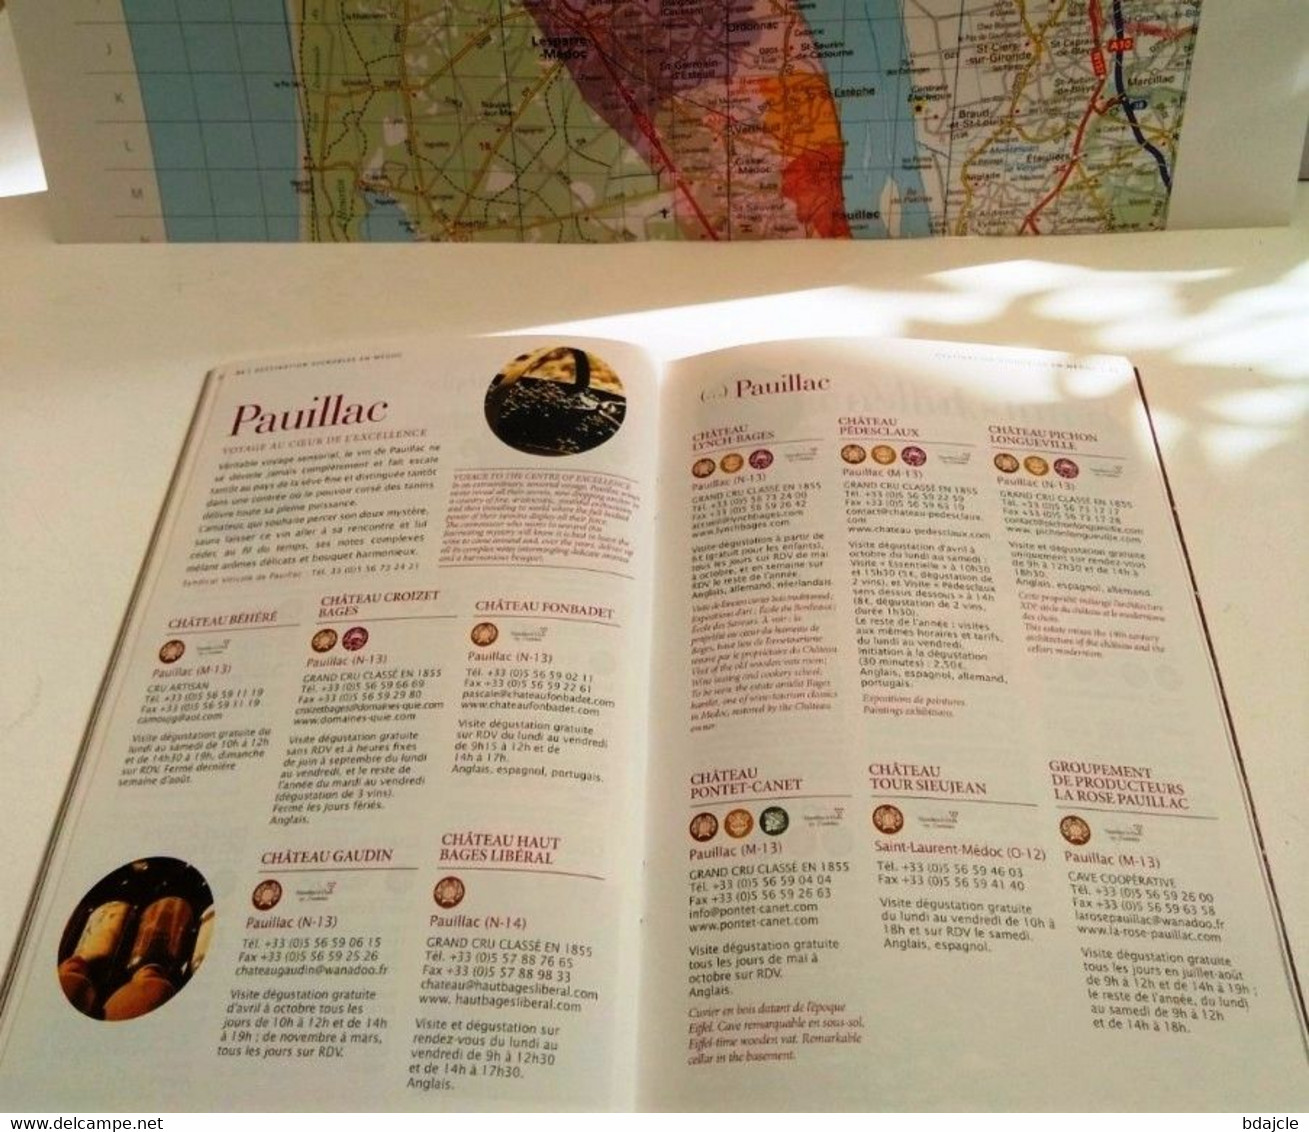 Lynch-Bages- Grand Cru classé en 1855 - Carnet Publicitaire + Guide des vins du Médoc 2008-2009 avec carte région Médoc